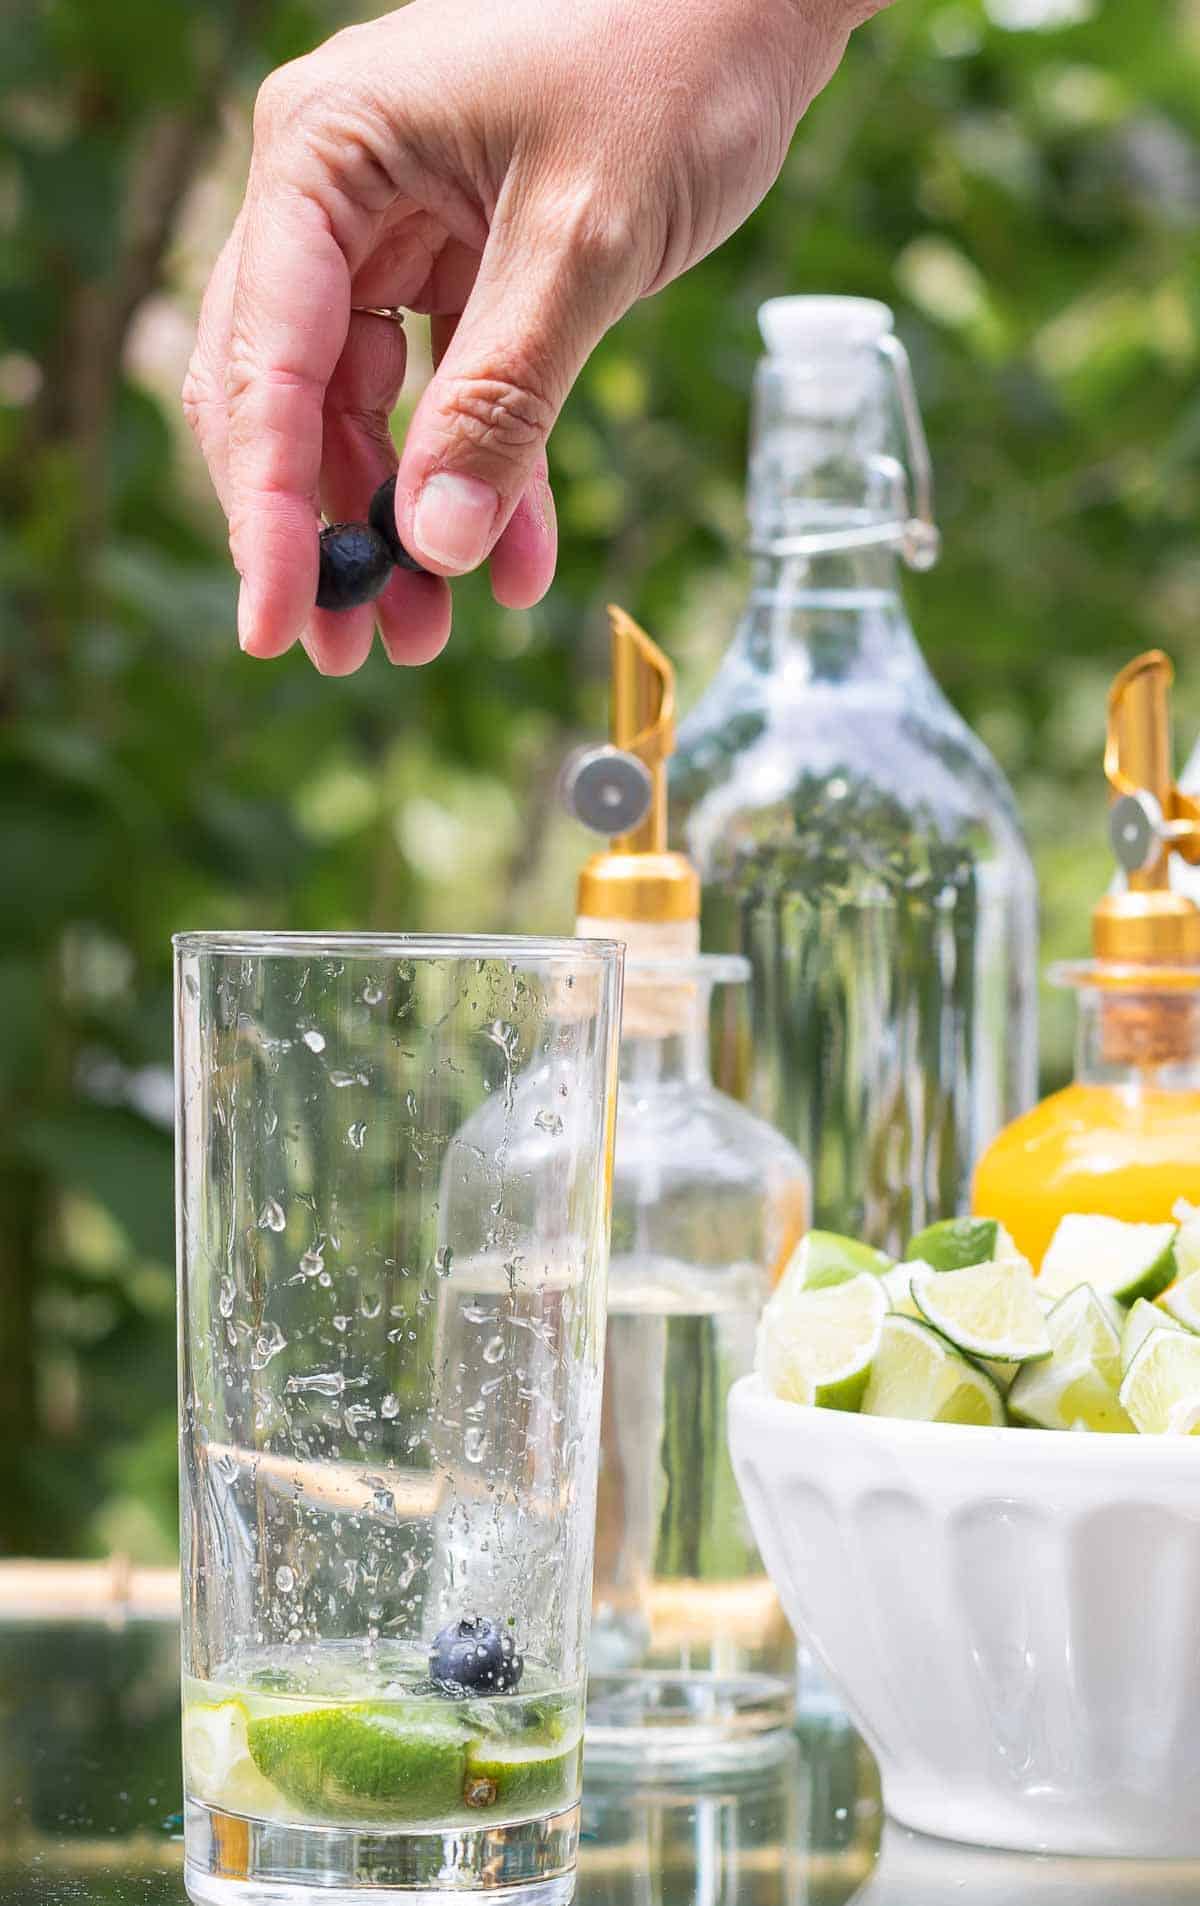 在金色和玻璃酒吧推车上设置了一个莫吉托酒吧，一只手伸手将蓝莓放入玻璃杯中。